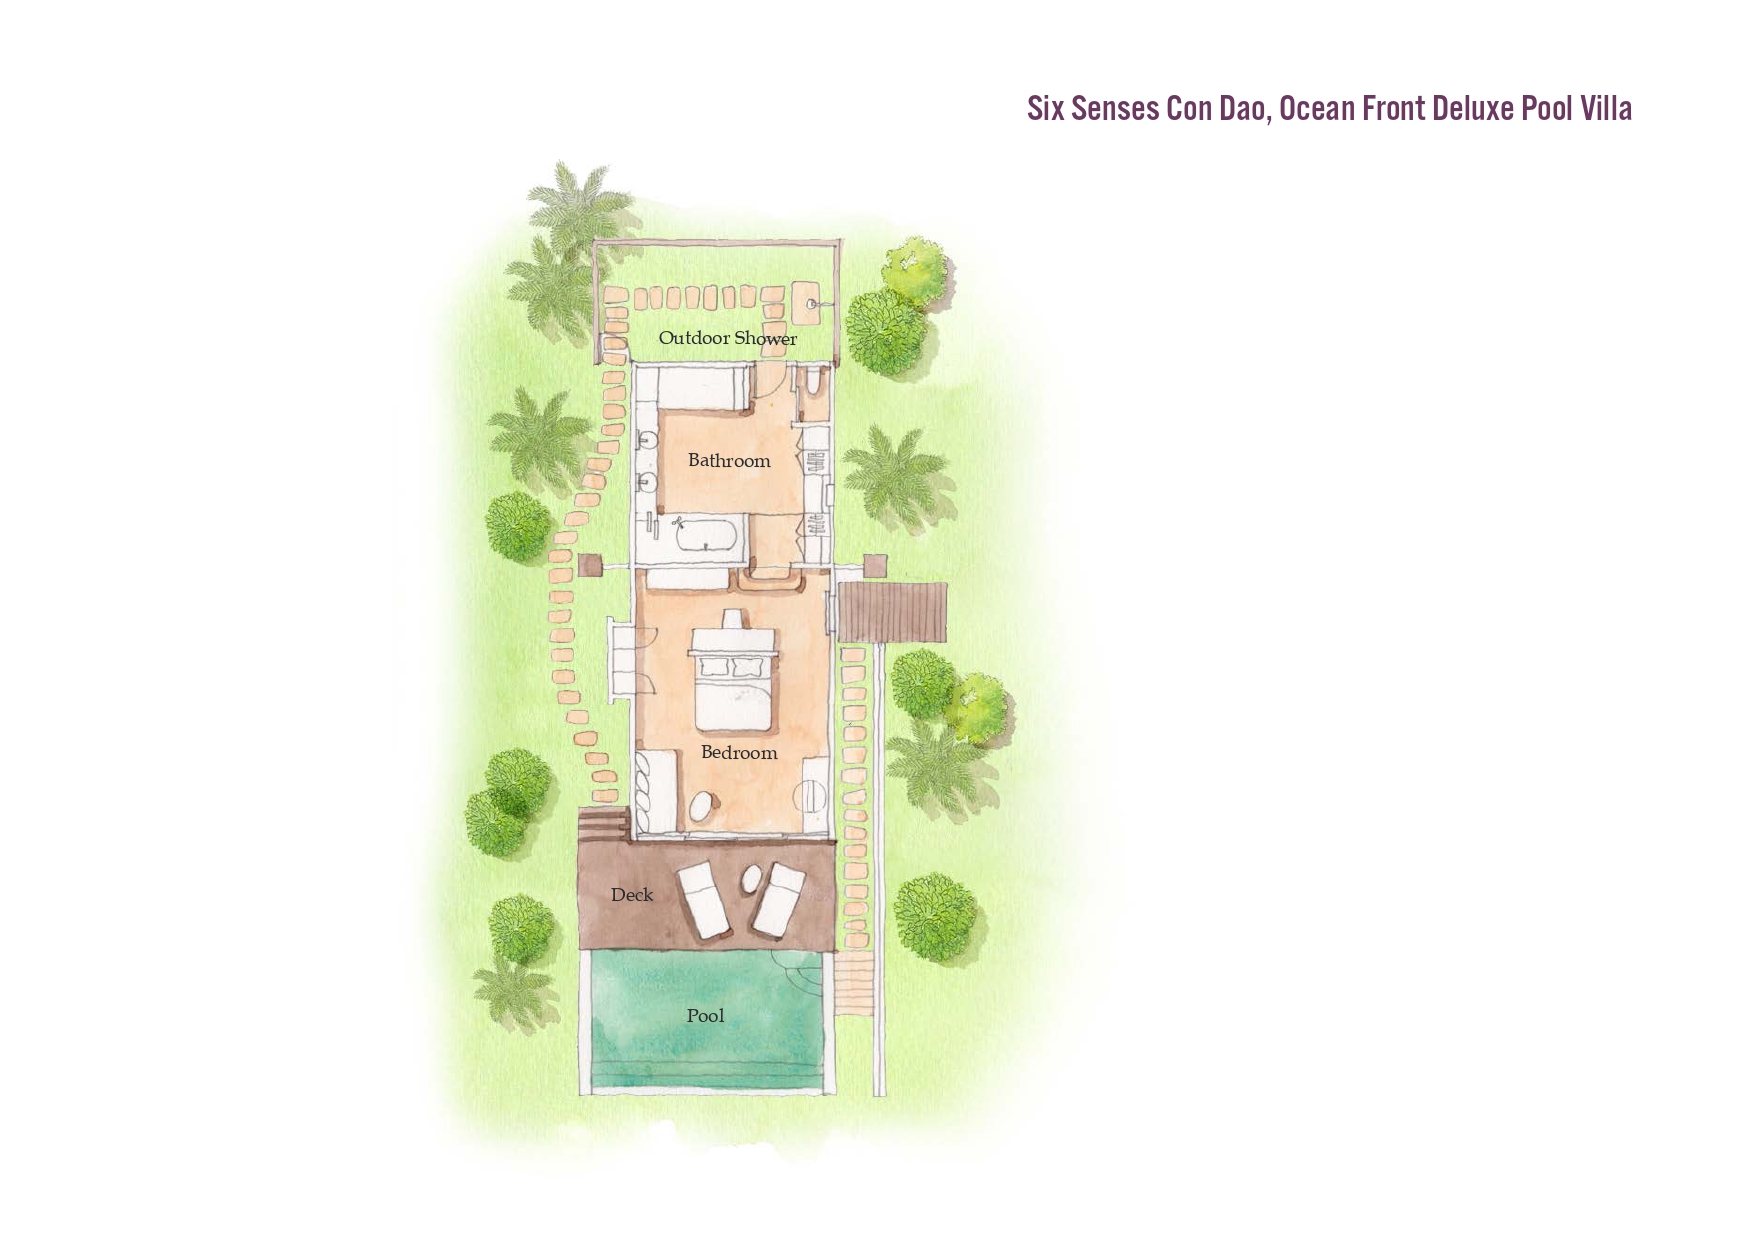 giá phòng Six Senses Resort Côn Đảo 2022 9